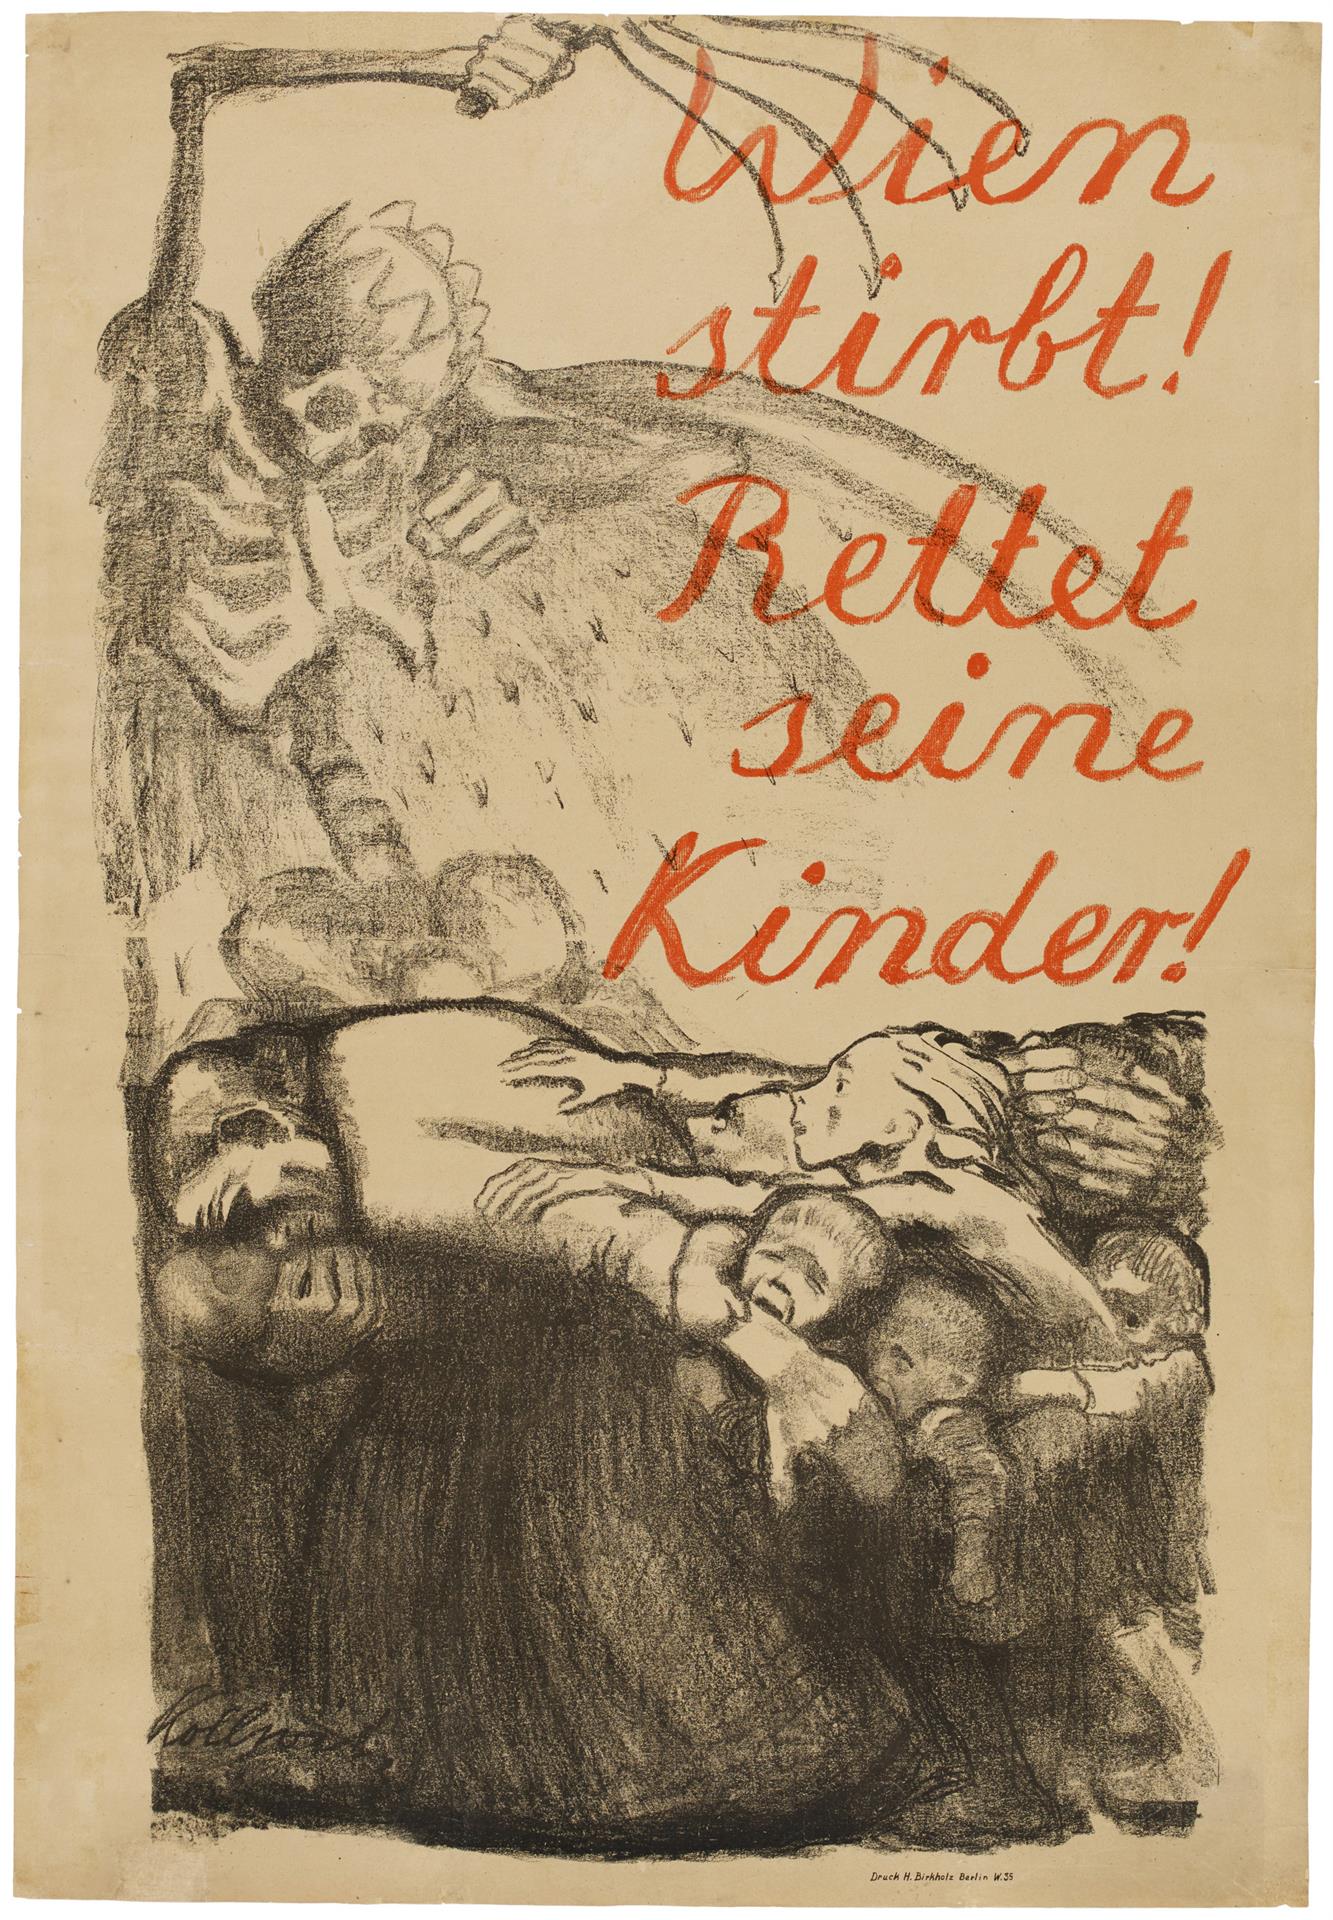 Käthe Kollwitz, affiche »Vienne meurt! Sauvez ses enfants!«, 1920, lithographie au crayon en deux couleurs (report), Kn 148 II, Collection Kollwitz de Cologne © Käthe Kollwitz Museum Köln